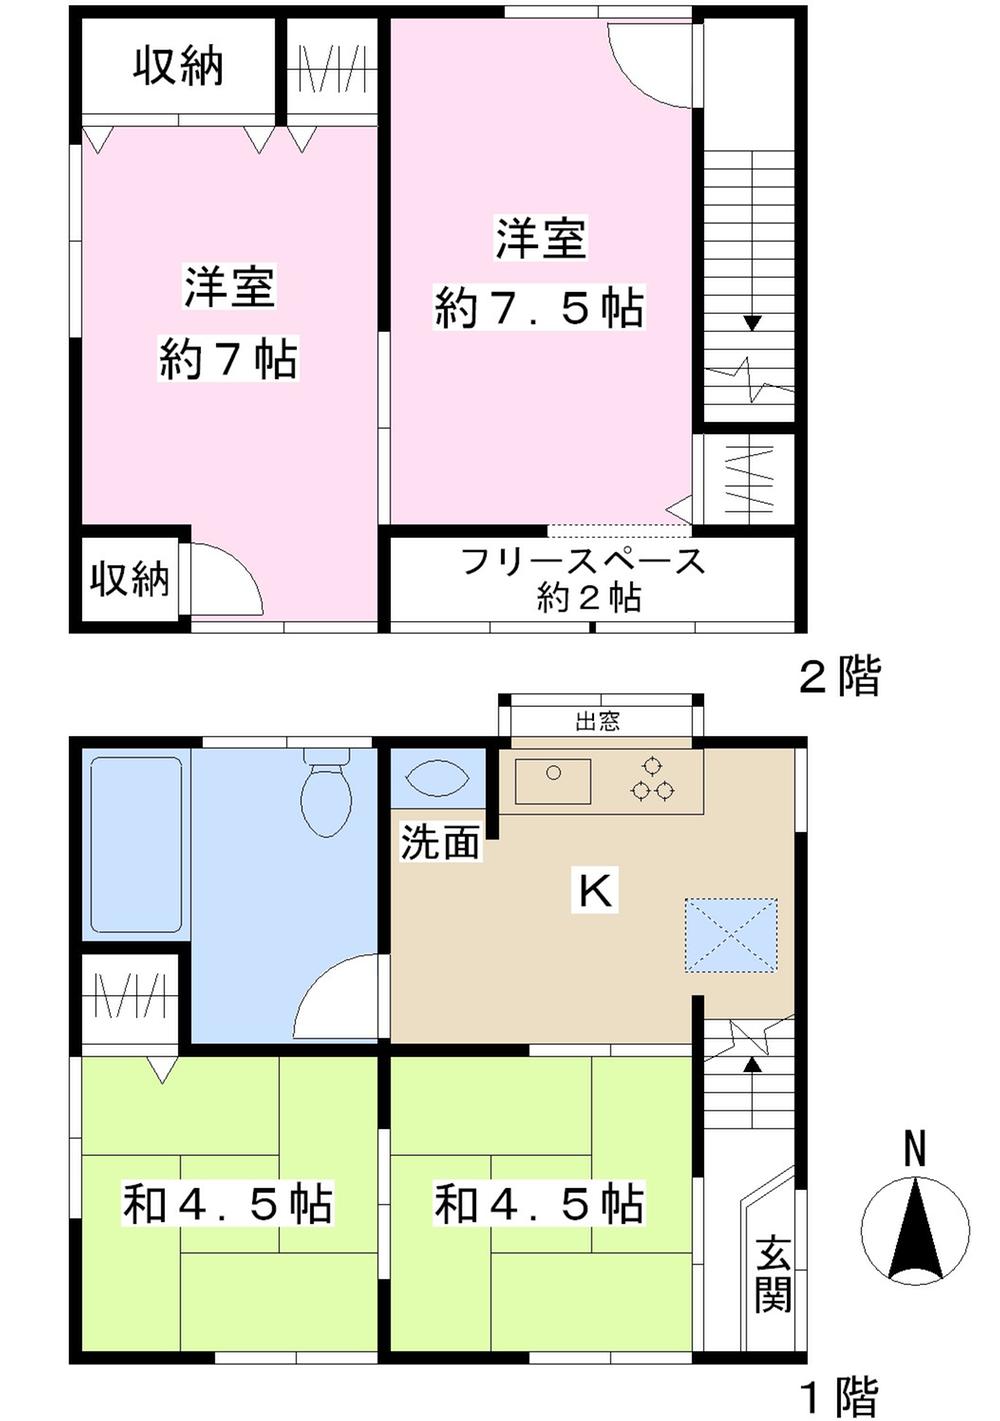 Floor plan. 8.9 million yen, 4DK, Land area 44.09 sq m , Building area 52.04 sq m